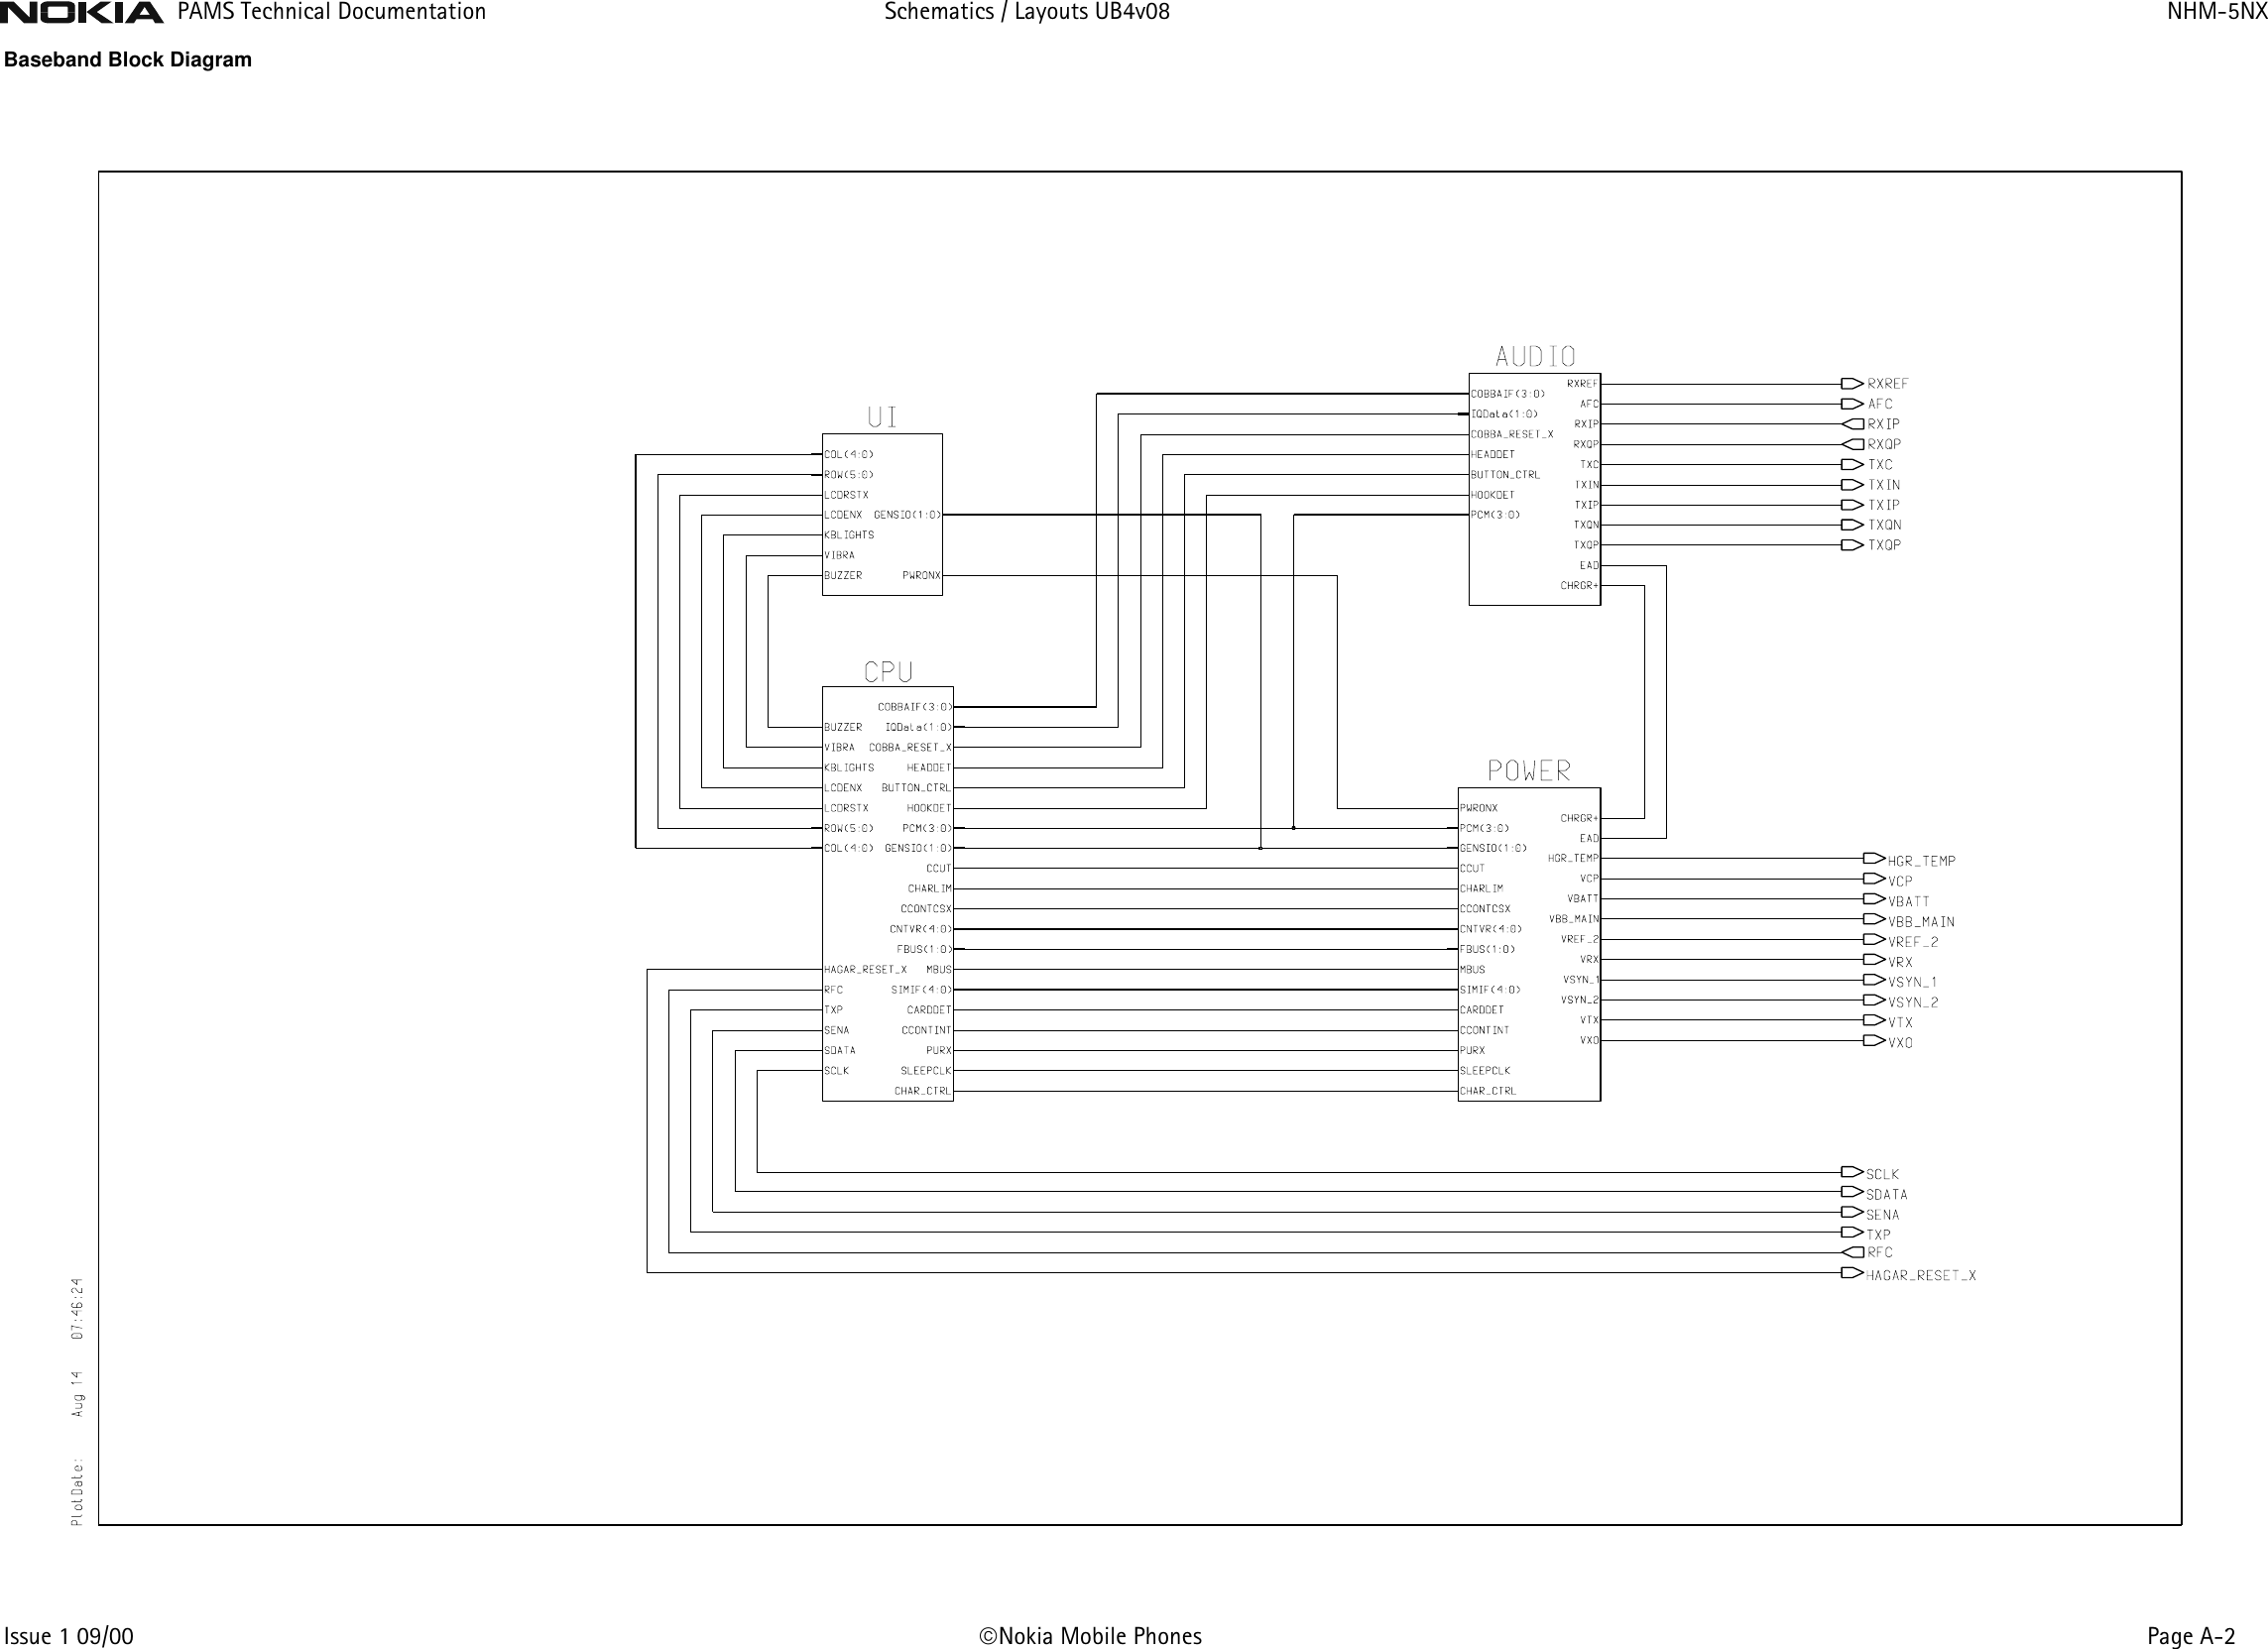 Page 2 of 8 - Nokia 3310 Nhm-5nx Schematics